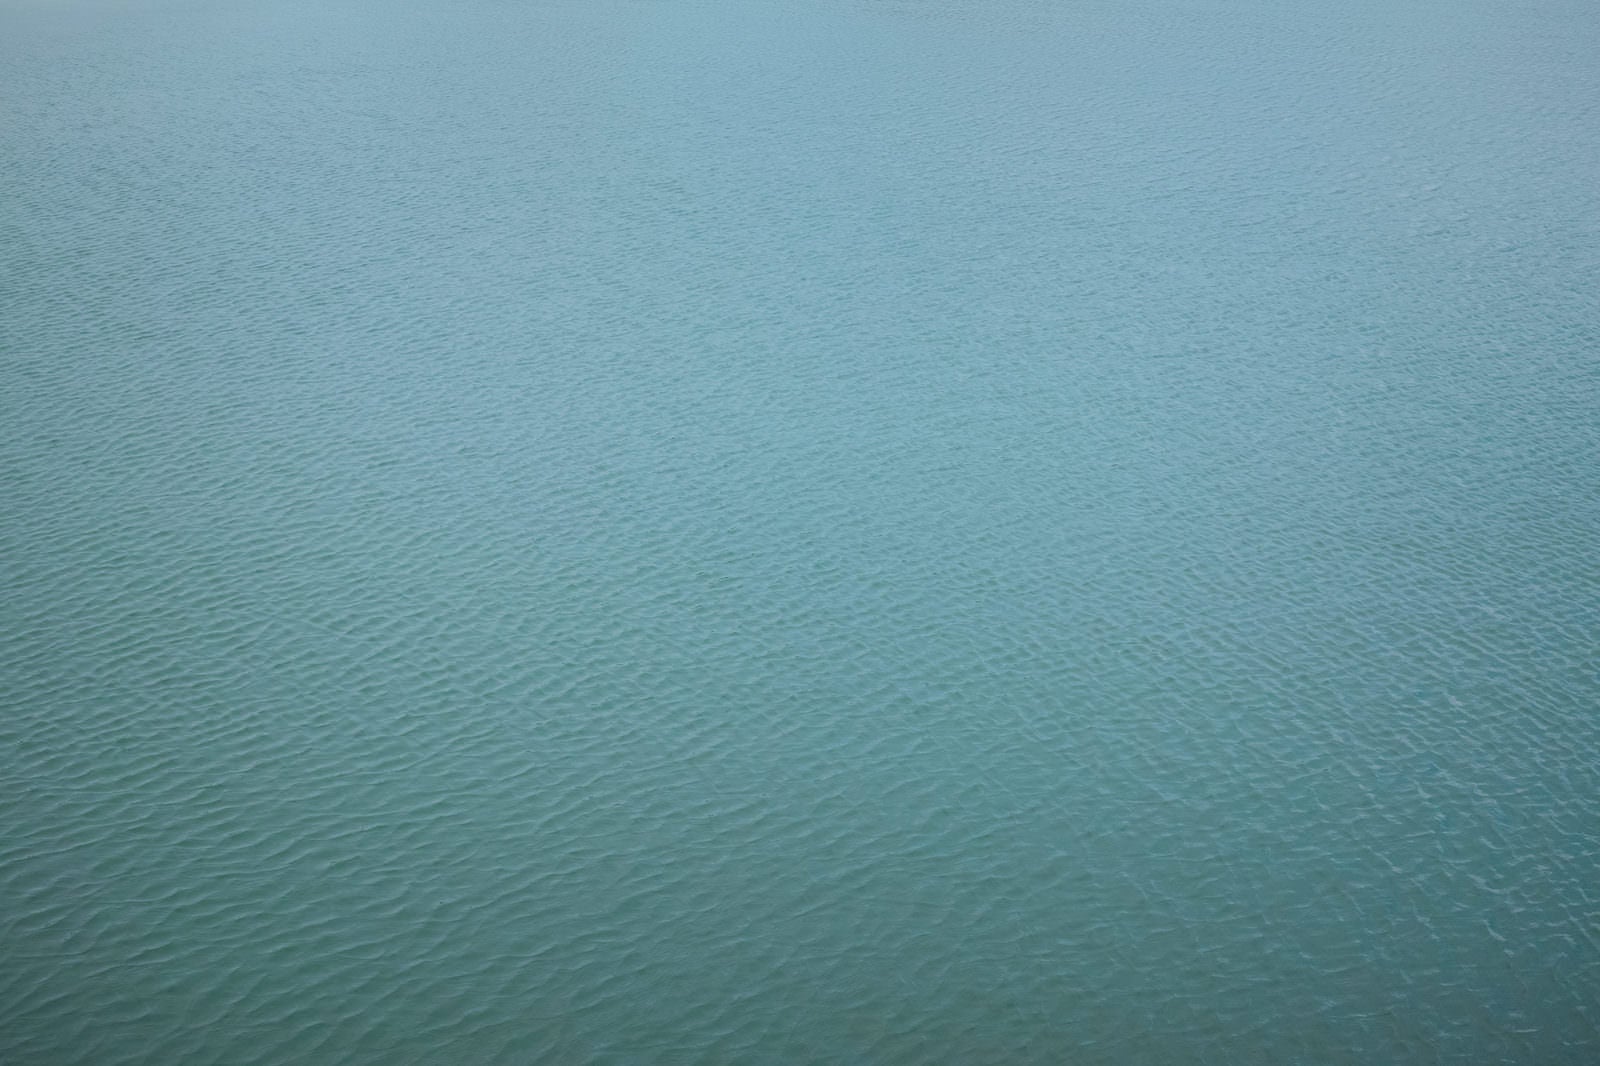 「穏やかな海の水面」の写真